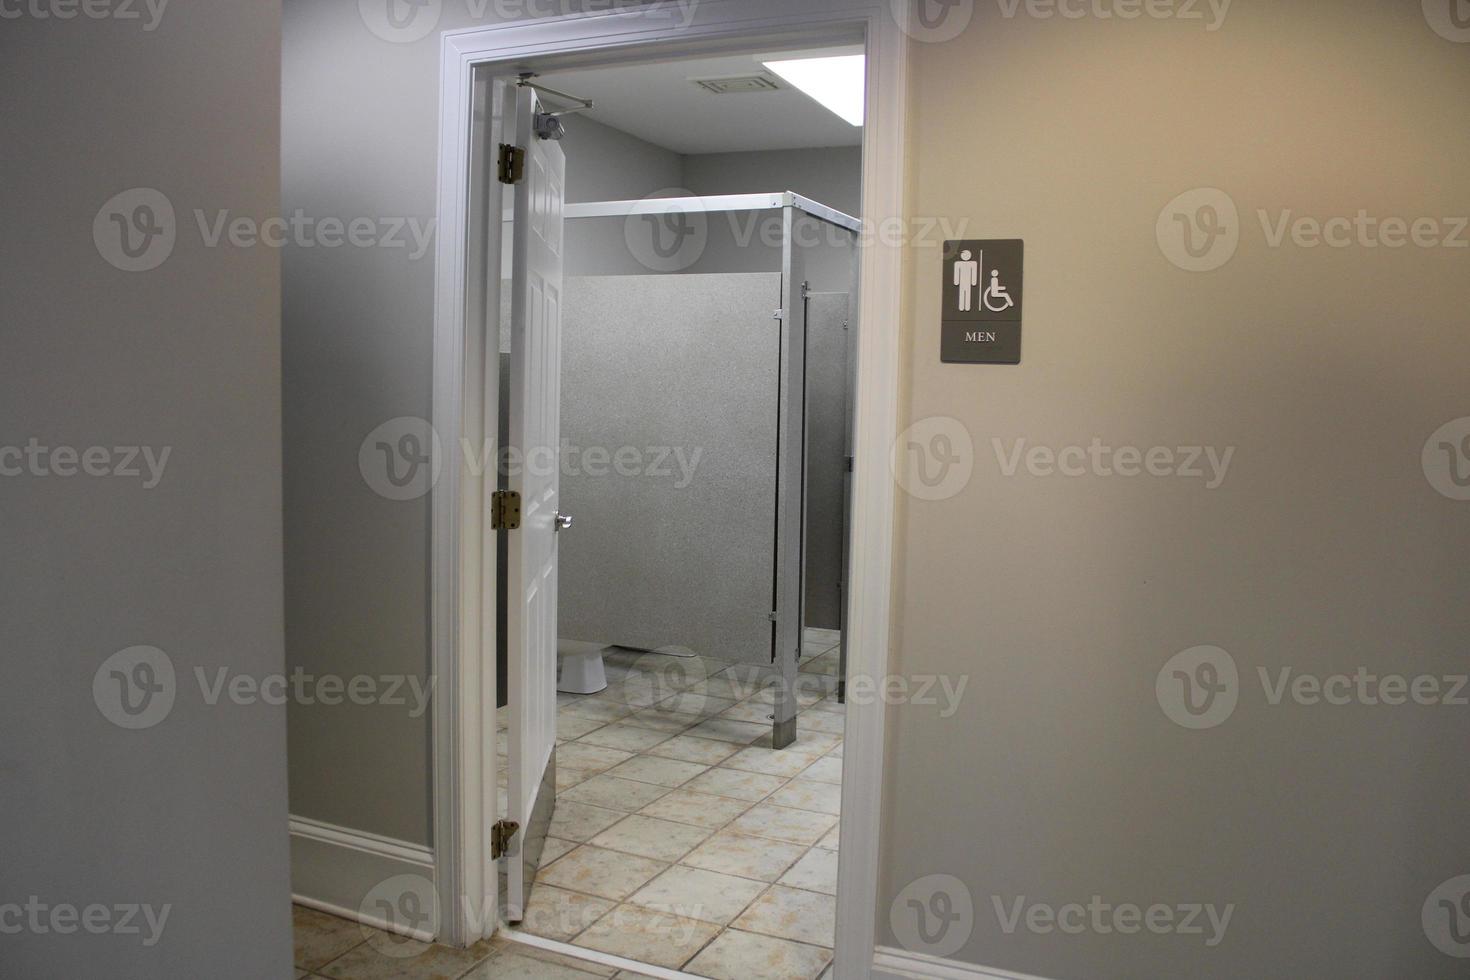 uomini toilette cartello interno inossidabile foto